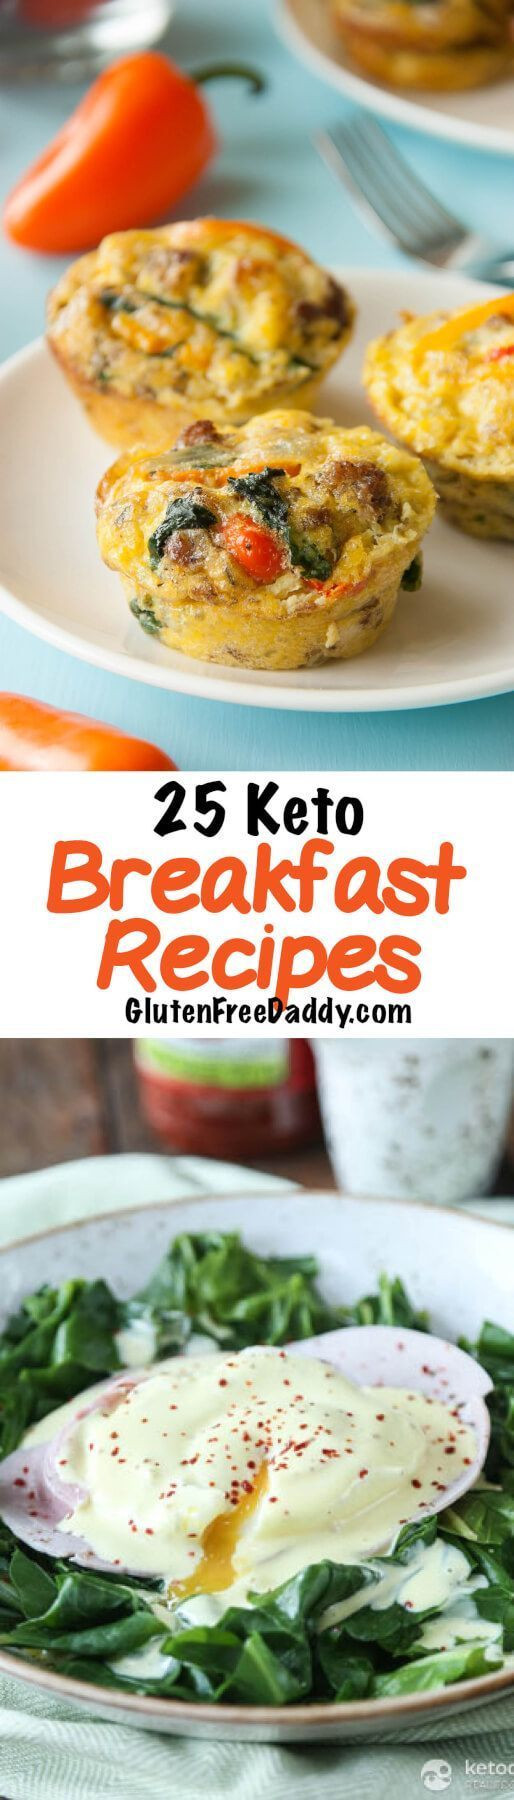 Keto Diet Breakfast Recipes
 Best 25 Keto t breakfast ideas on Pinterest